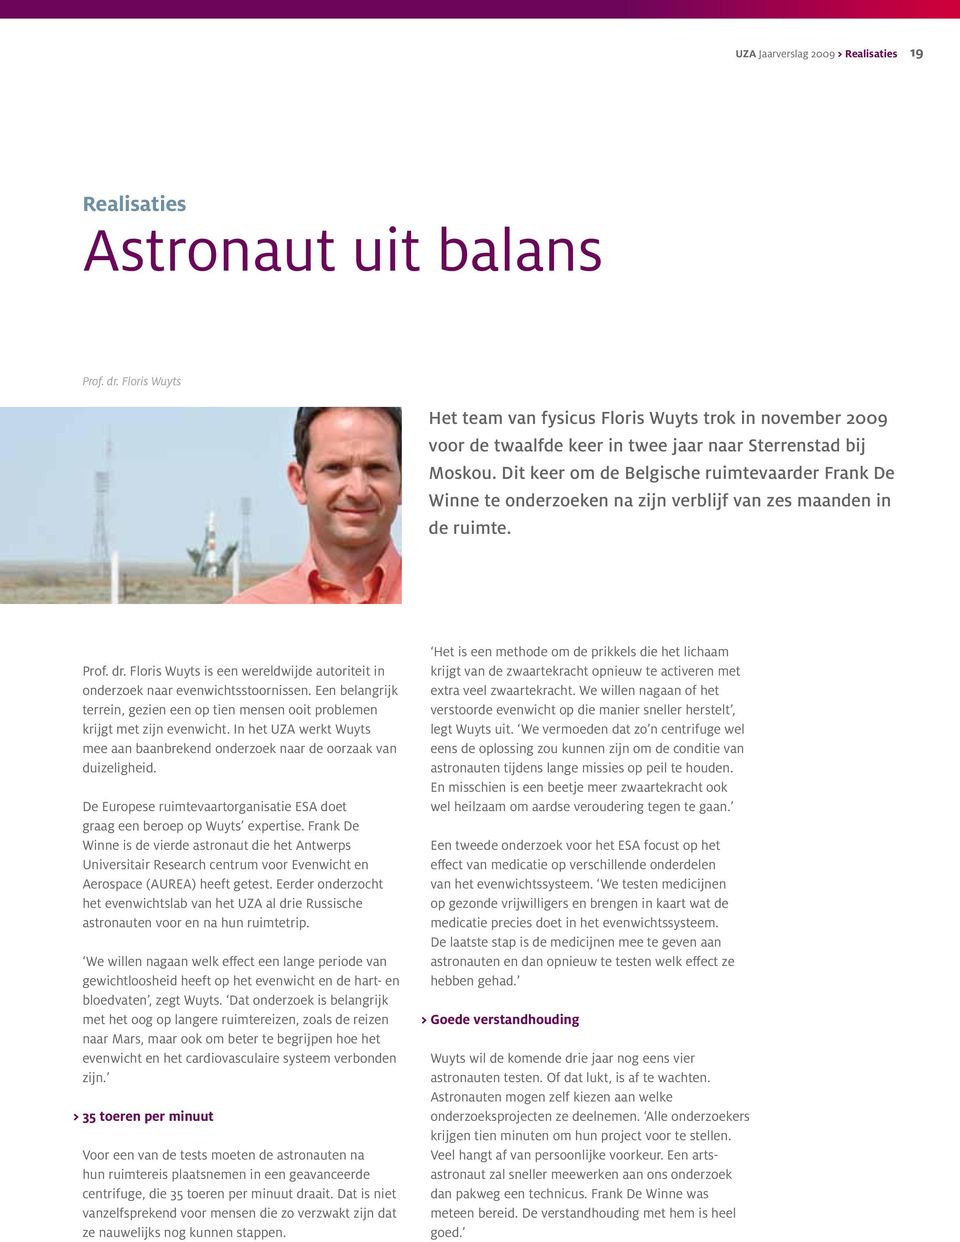 Dit keer om de Belgische ruimtevaarder Frank De Winne te onderzoeken na zijn verblijf van zes maanden in de ruimte. Prof. dr.